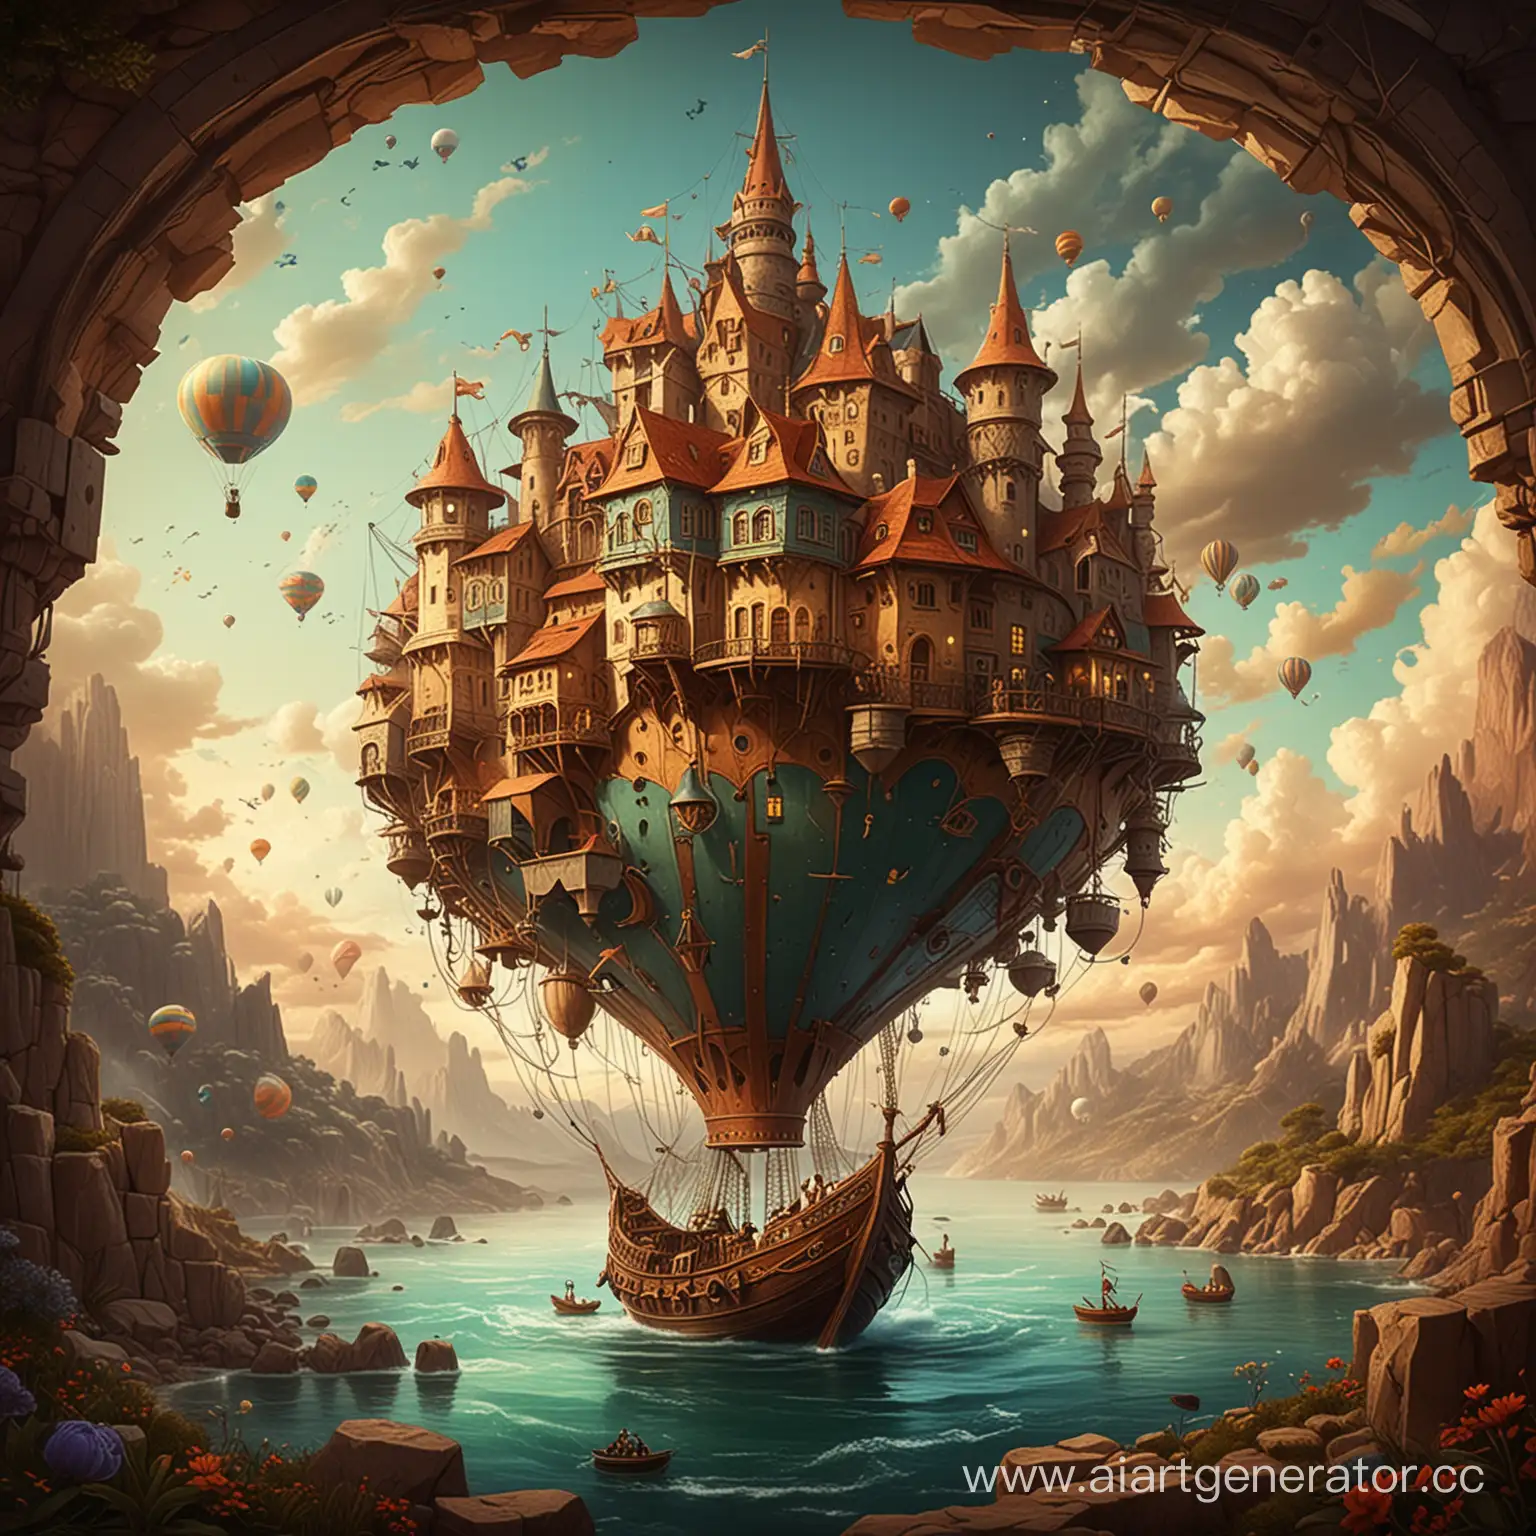 Whimsical-Imaginarium-Enchanting-Illustration-of-Fantastical-Worlds